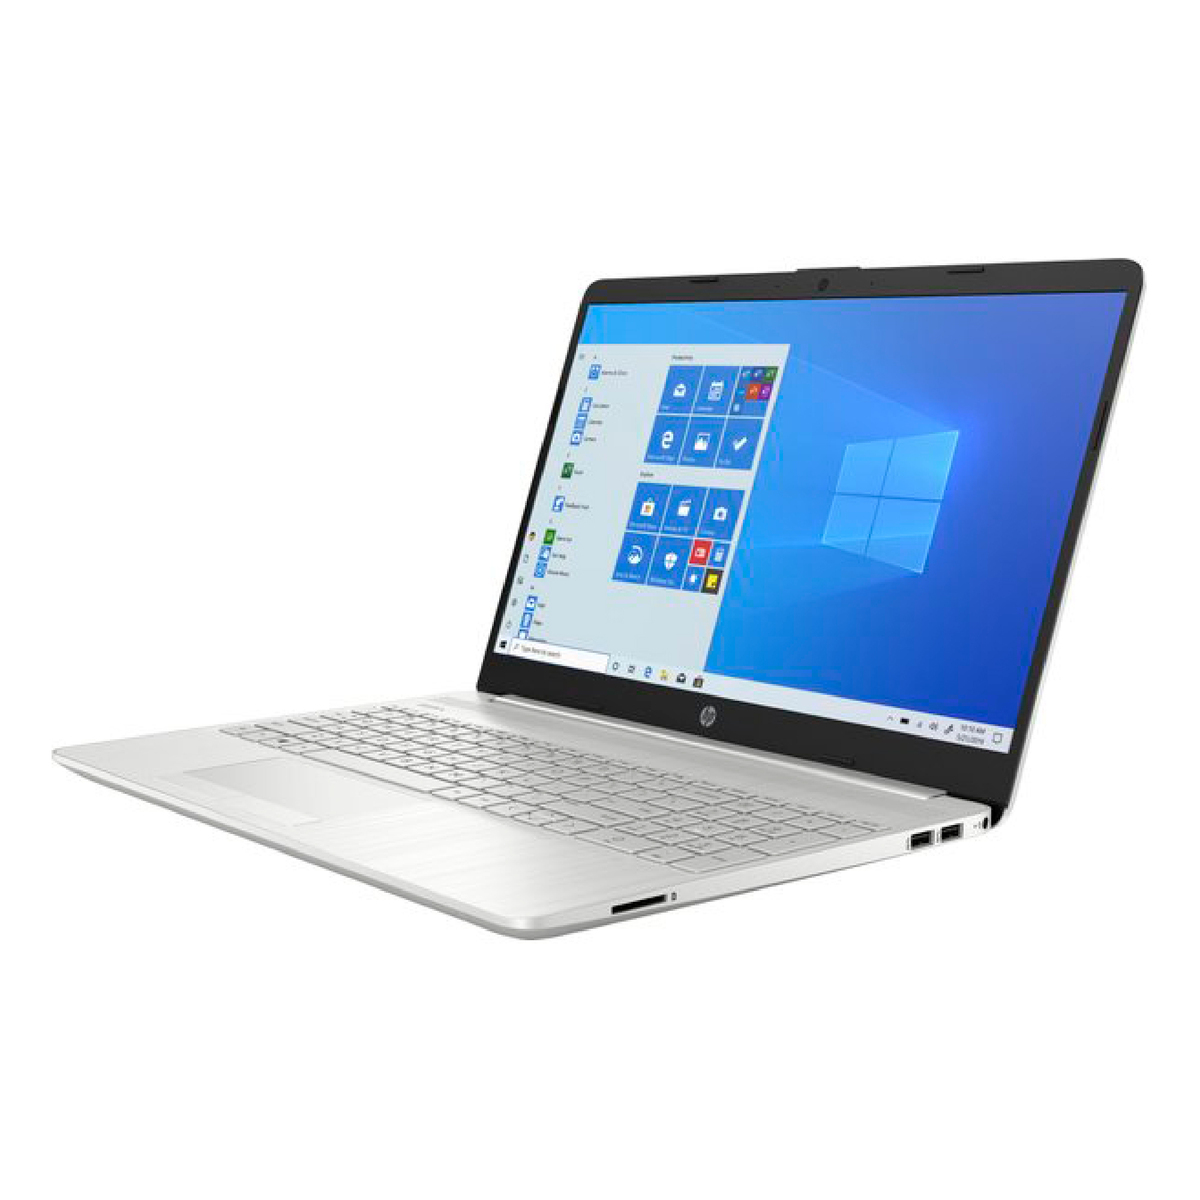 HP Notebook 15-DW1024WM,Intel Core I3,4GB RAM,128GB SSD,Intel HD VGA,15.6" HD,Windows 10